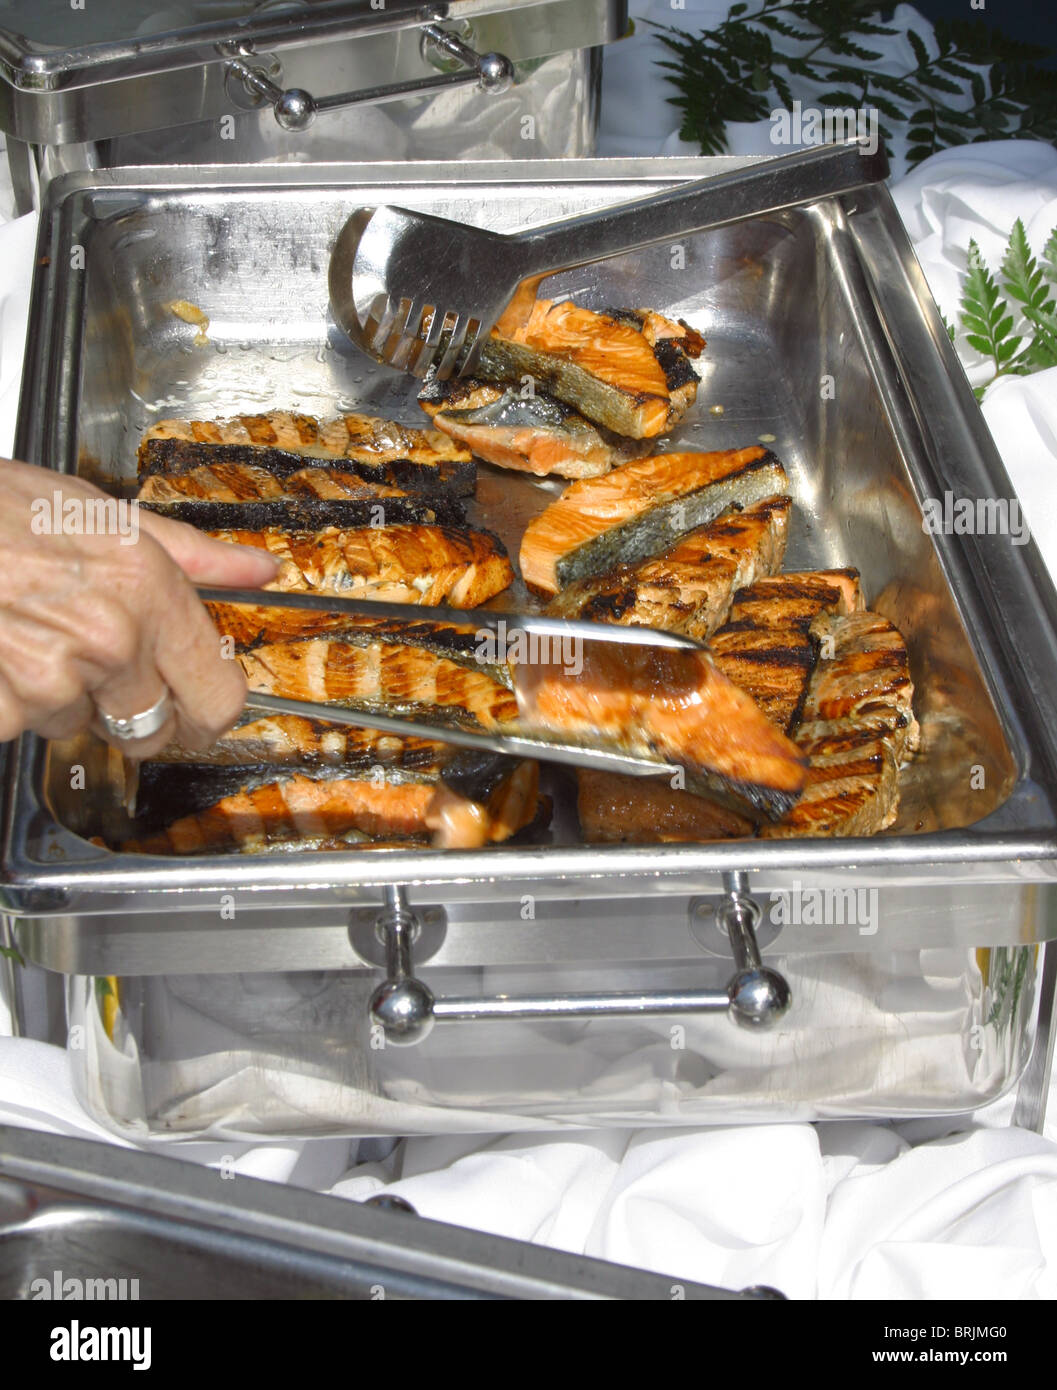 Délicieux et fraîchement darnes de saumon grillées servi de réchauffement en acier inoxydable serveurs sur un navire de croisière de luxe. Servir tong Banque D'Images